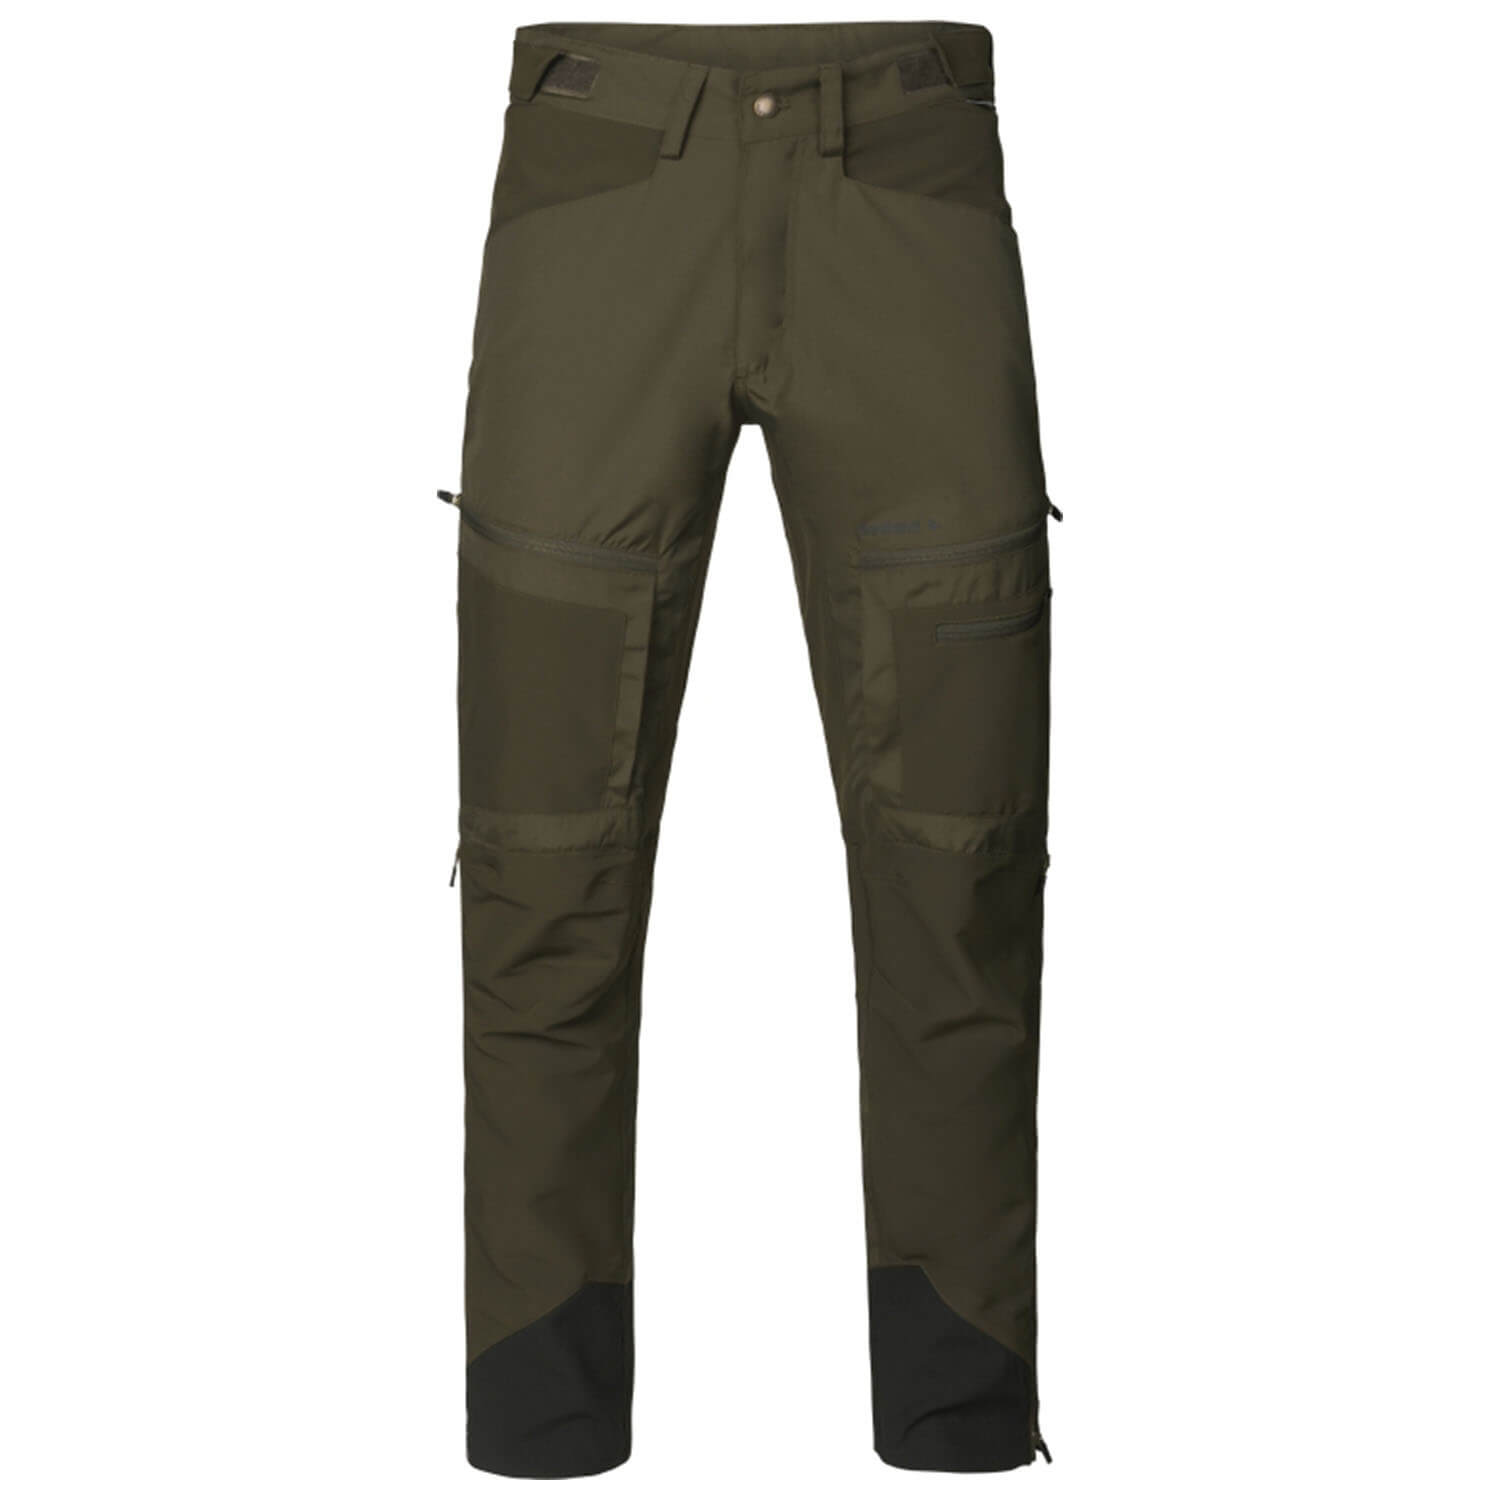 Seeland pants hemlock (Pine Green/Grizzly Brown)